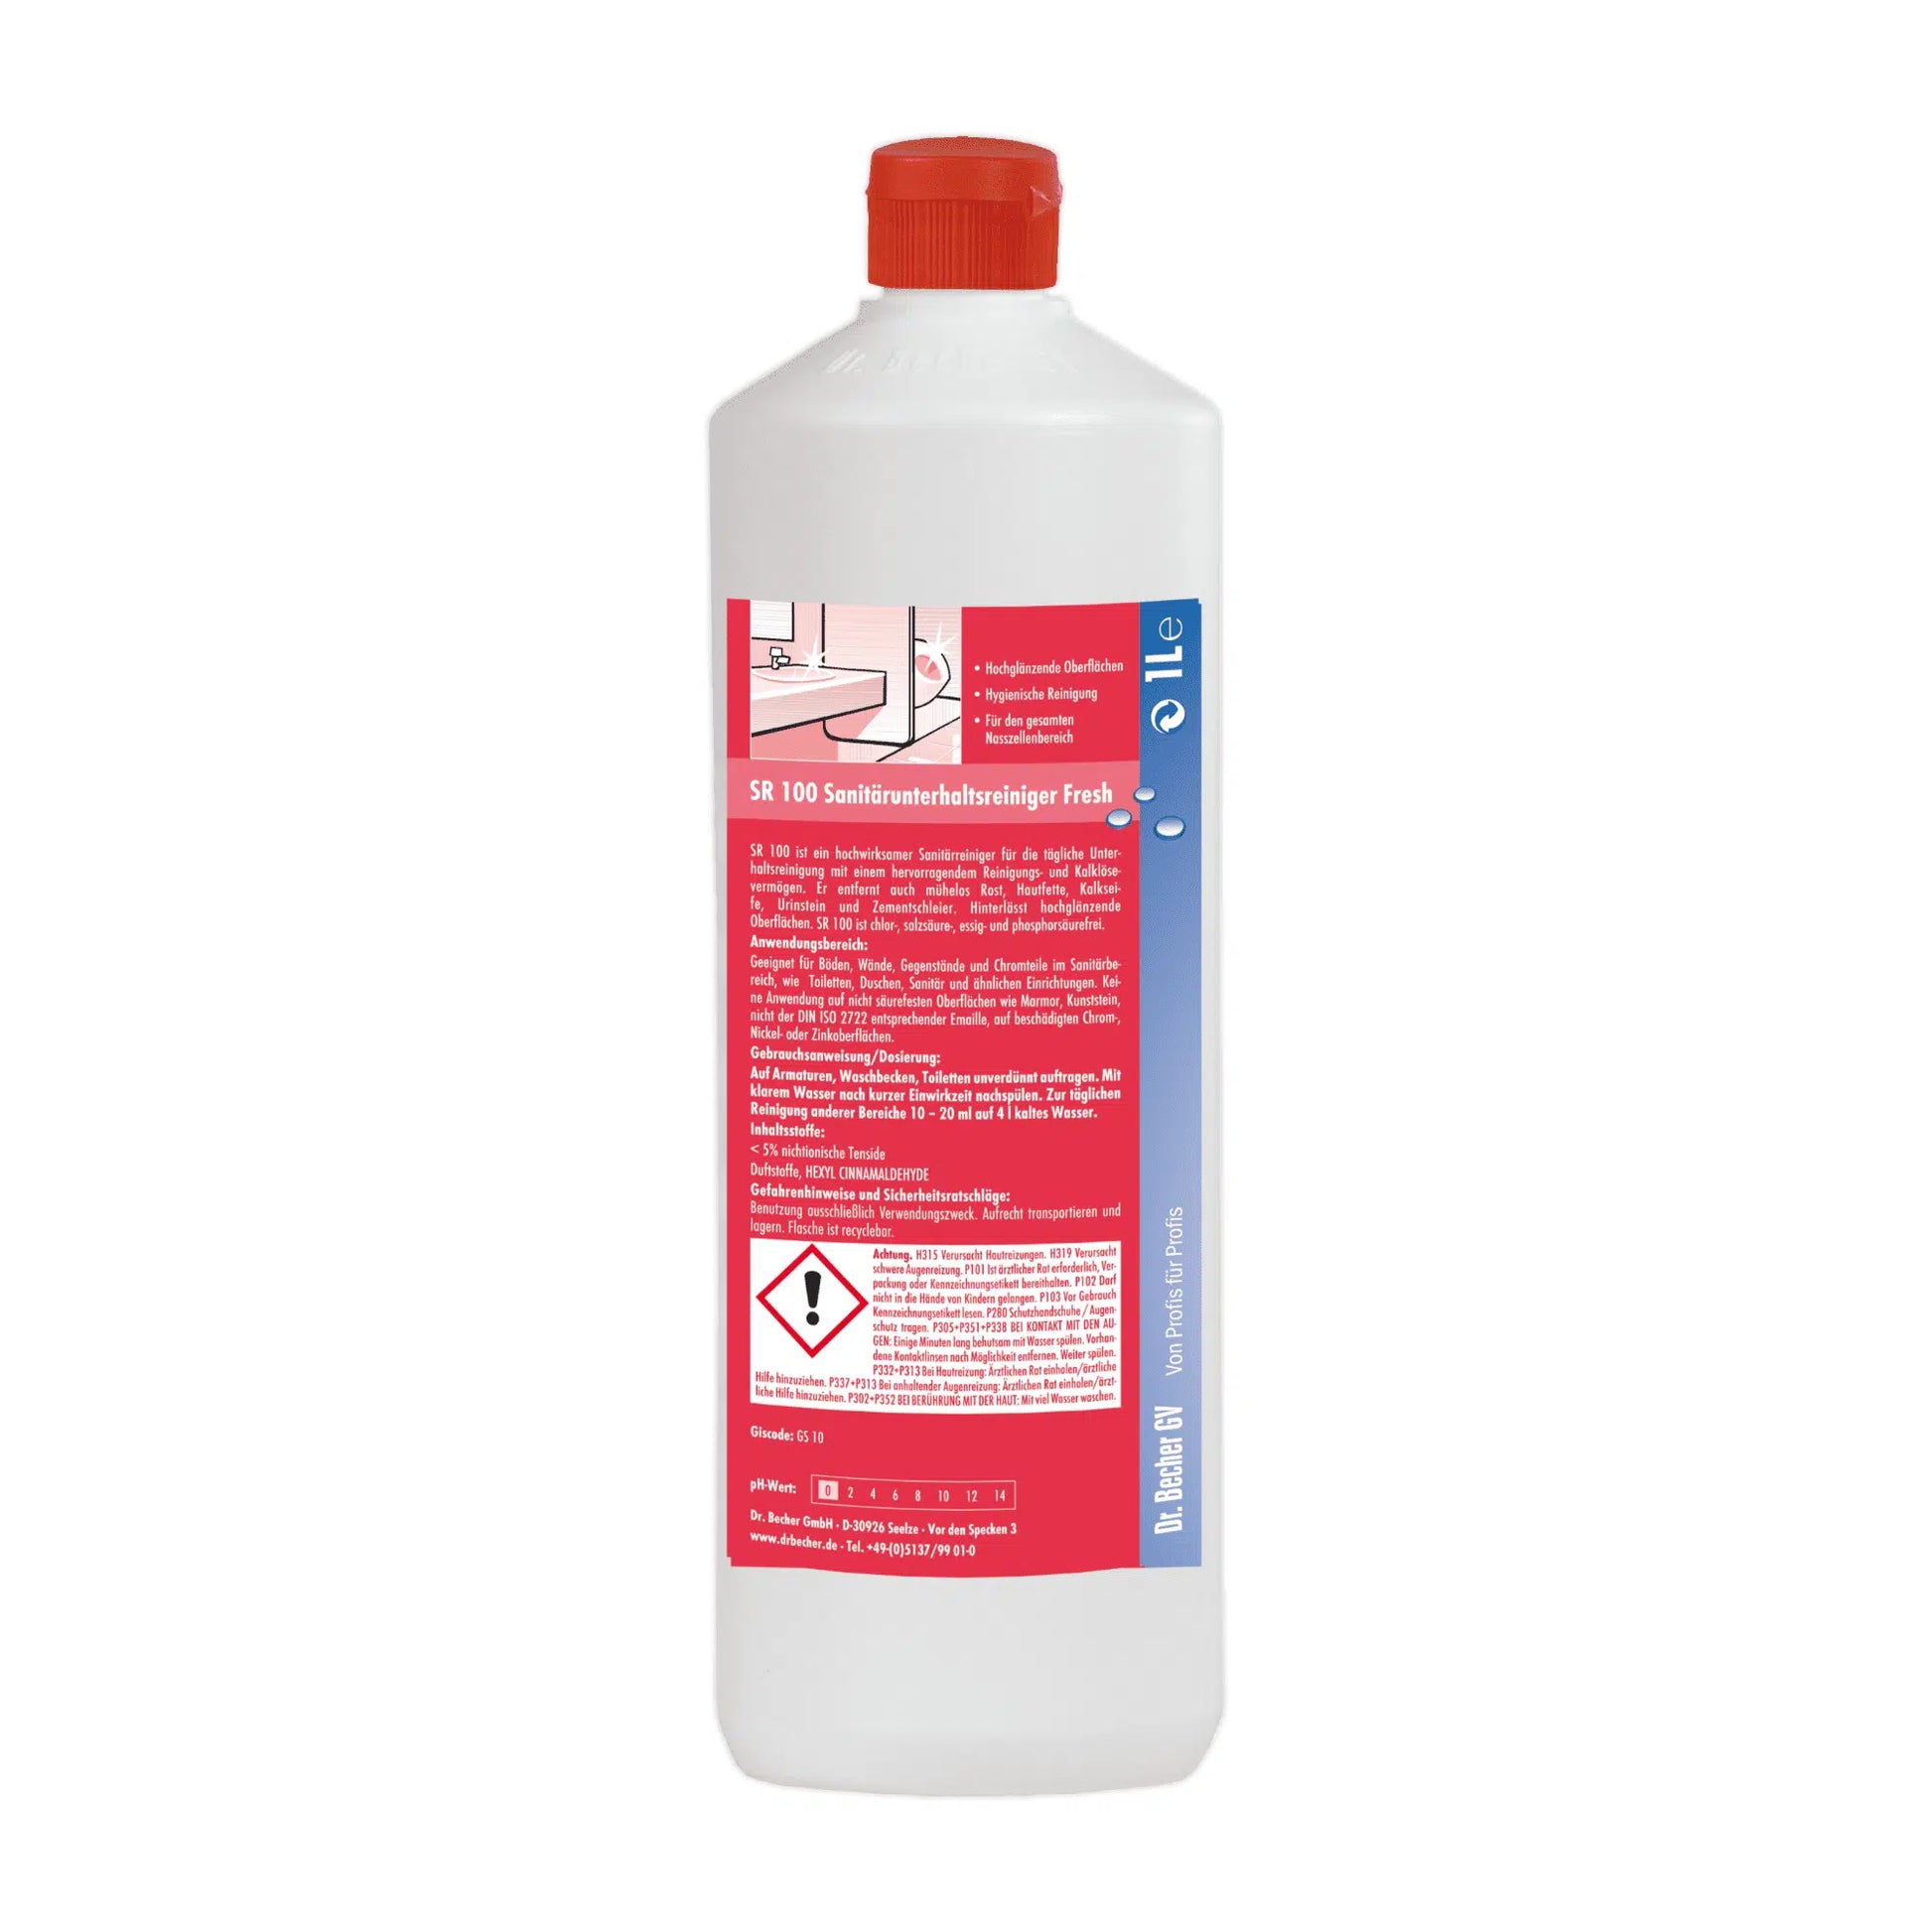 Eine weiße Plastikflasche mit rotem Verschluss. Auf dem Etikett sind deutsche Hinweise sowie Gefahrensymbole zu sehen, die darauf hinweisen, dass sich darin ein Dr. Becher SR 100 Sanitärunterhaltsreiniger Fresh der Dr. Becher GmbH befindet.